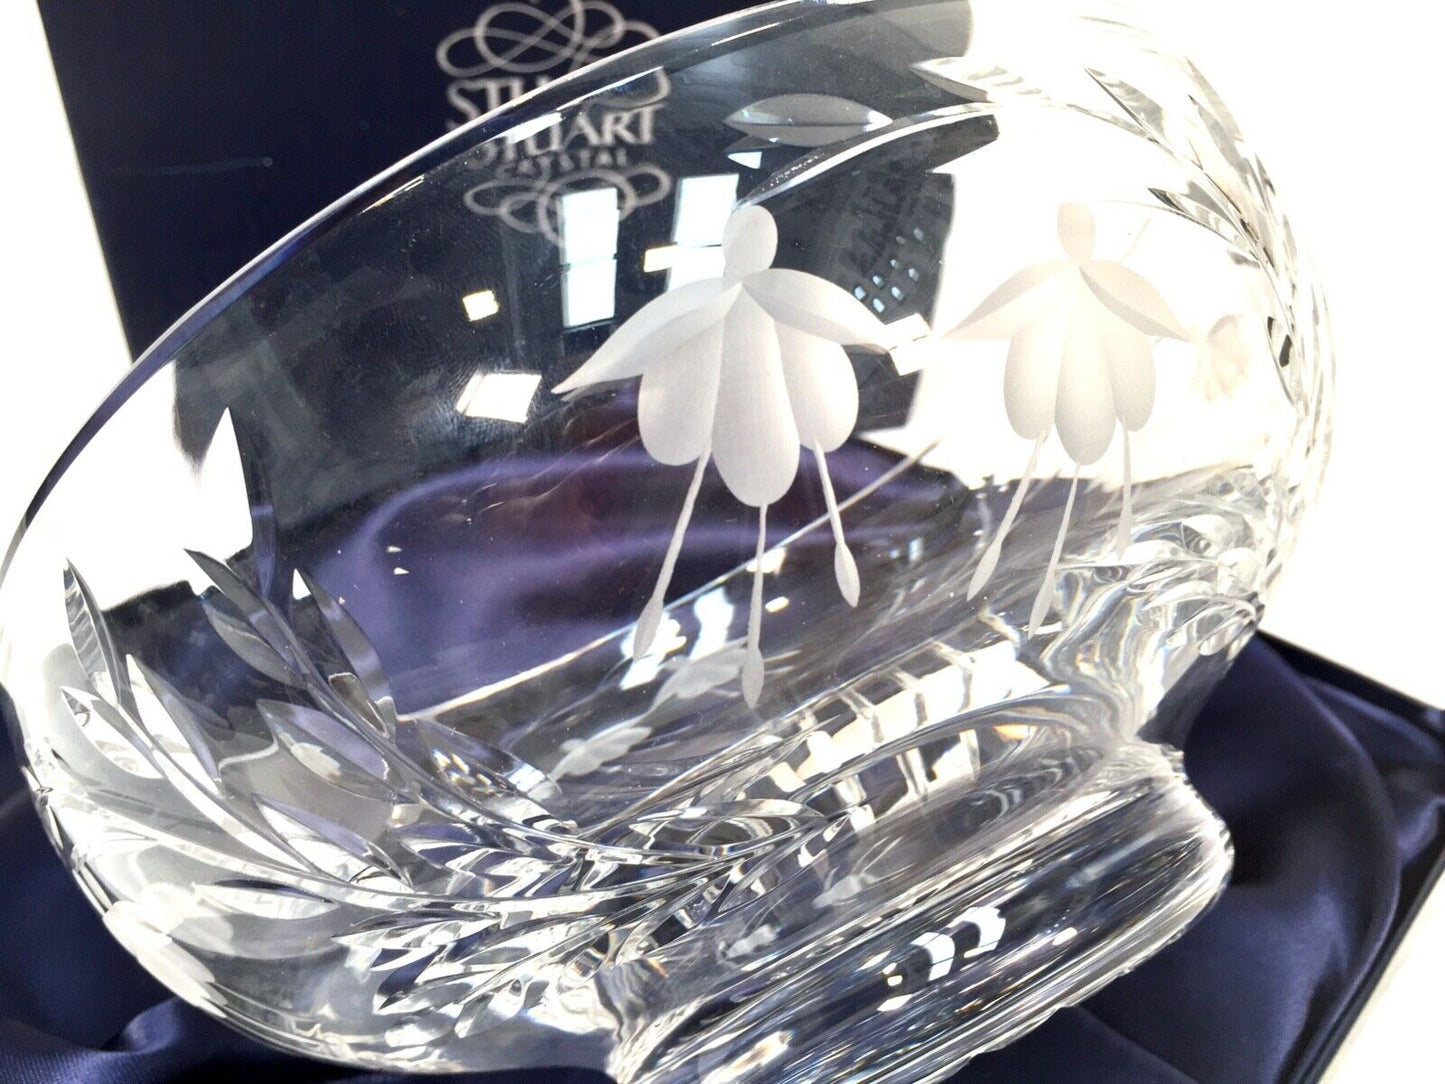 Vintage Stuart Crystal Glass Fruit Bowl complete in Box